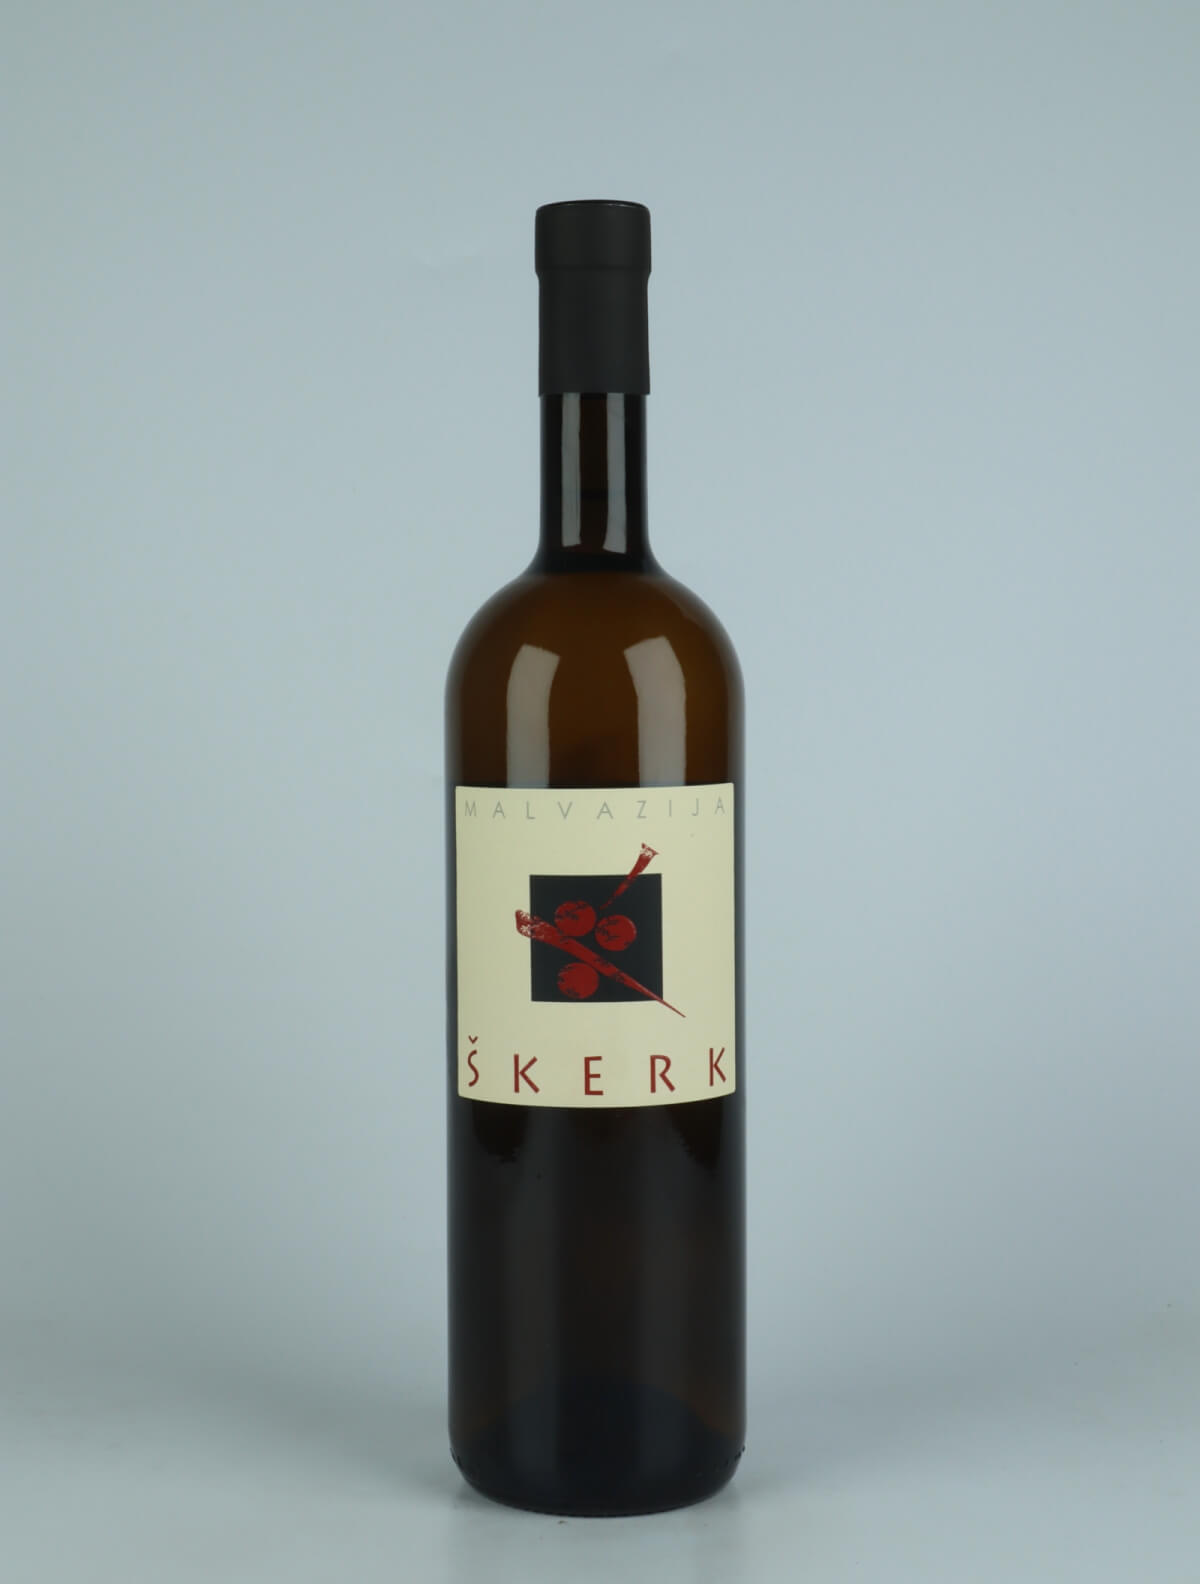 En flaske 2021 Malvazija Orange vin fra Skerk, Friuli i Italien